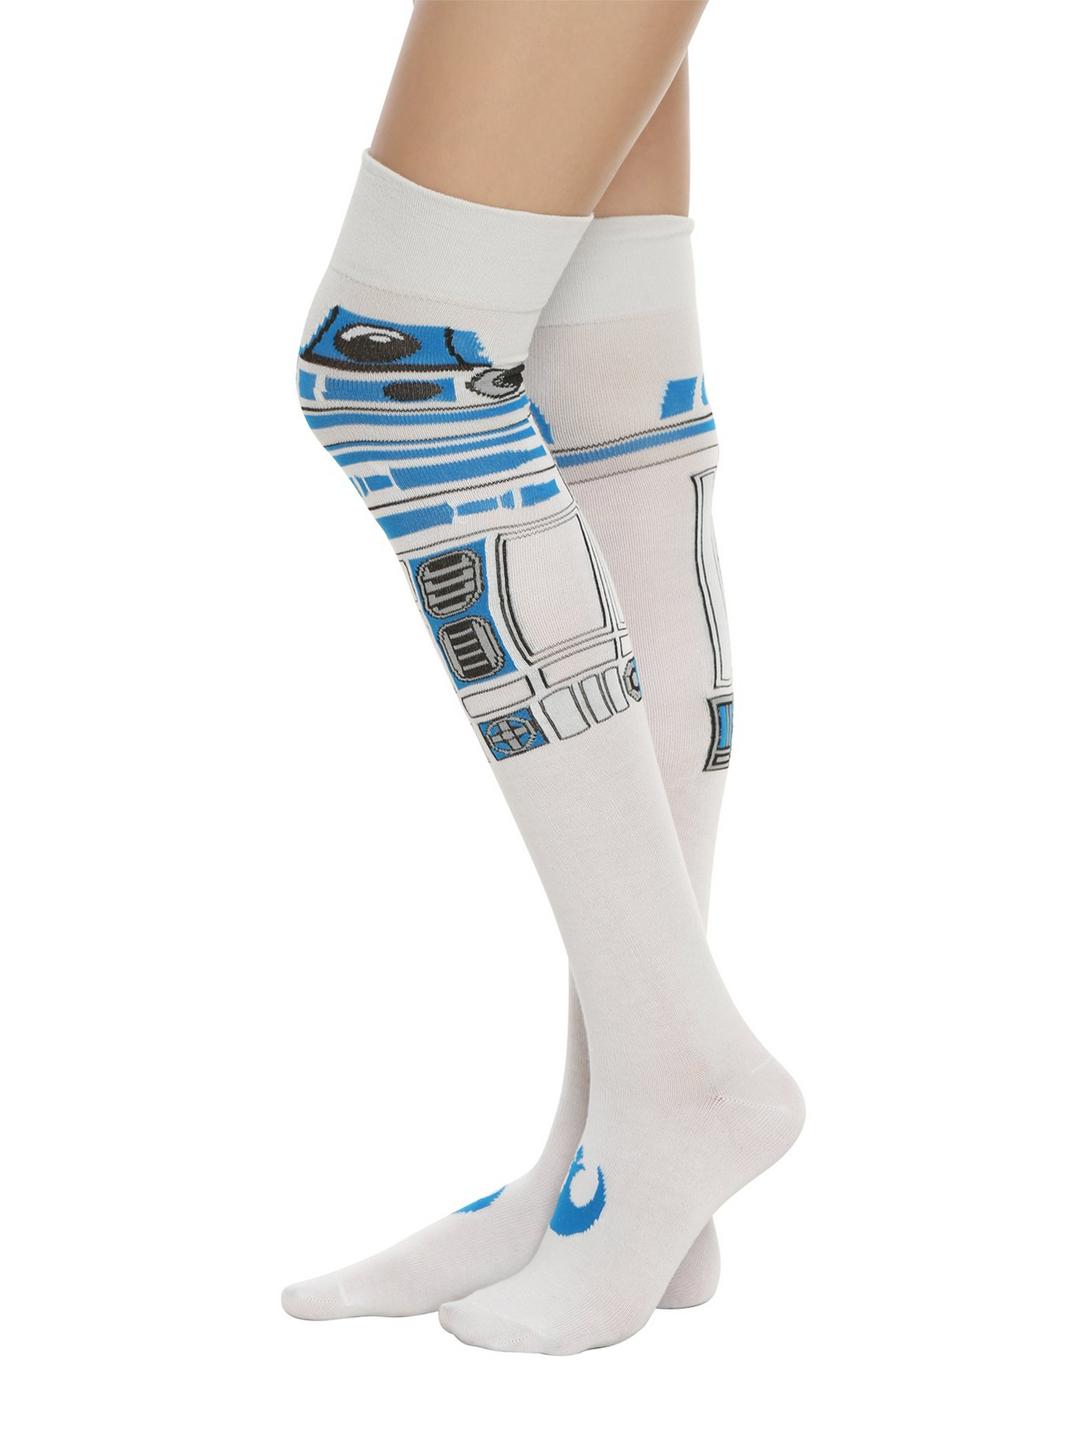 Star Wars R2-D2 Over-The-Knee Socks, , hi-res